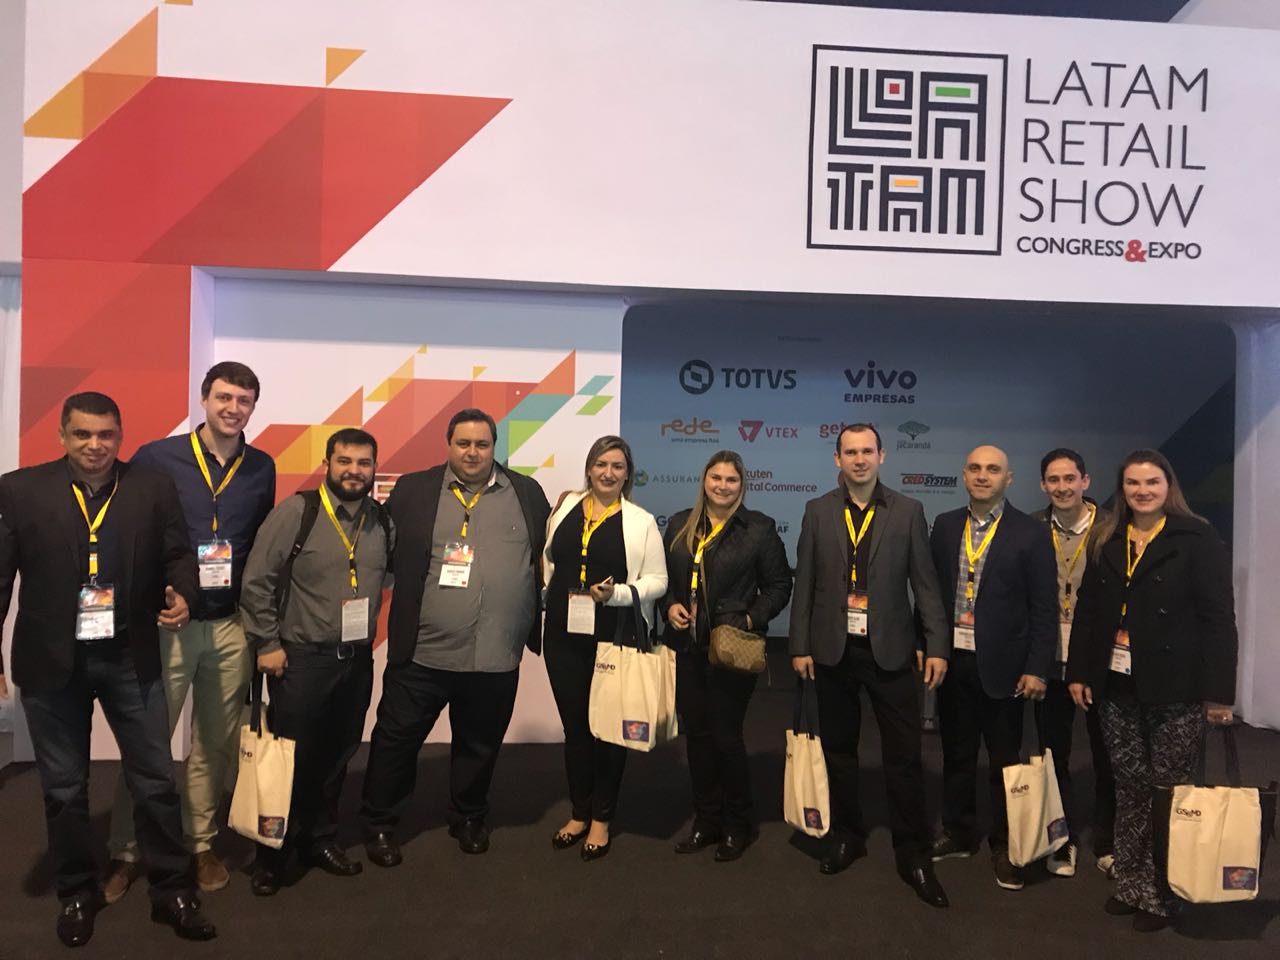 Lojas MM participa da Latam Retail Show 2018